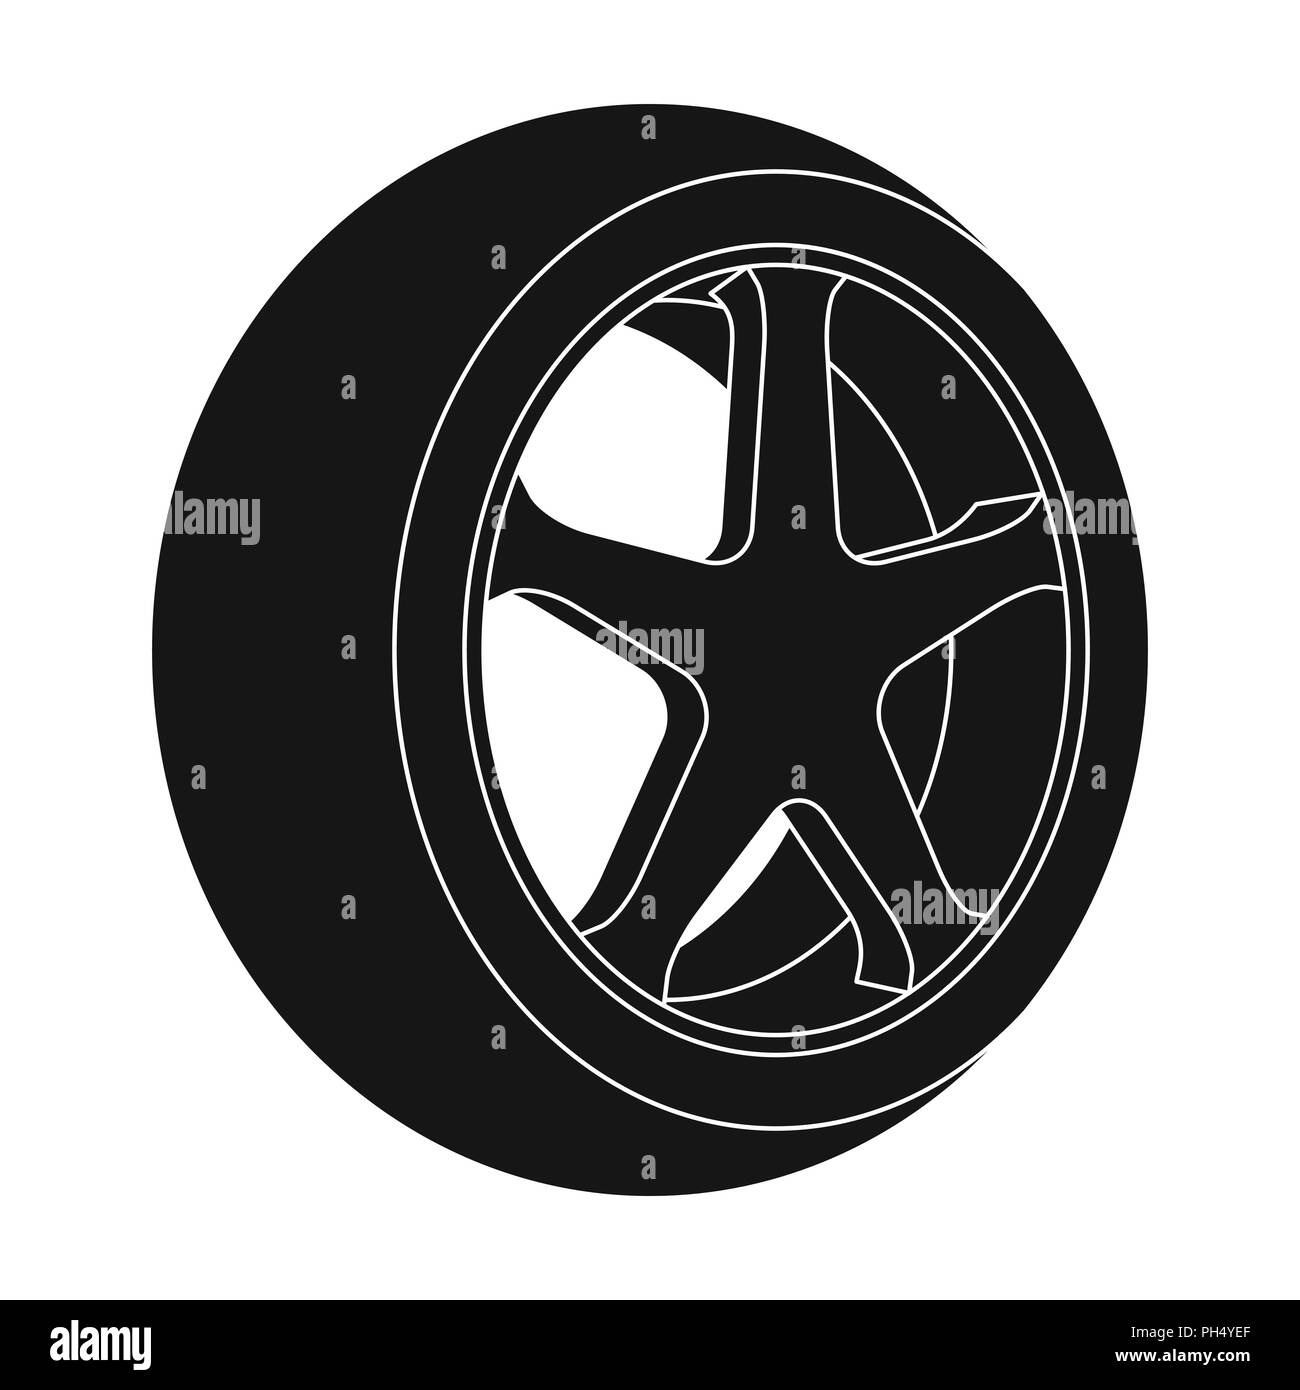 Couverture de pneu - couverture pour pneu de voiture - Couverture de pneu  de voiture 